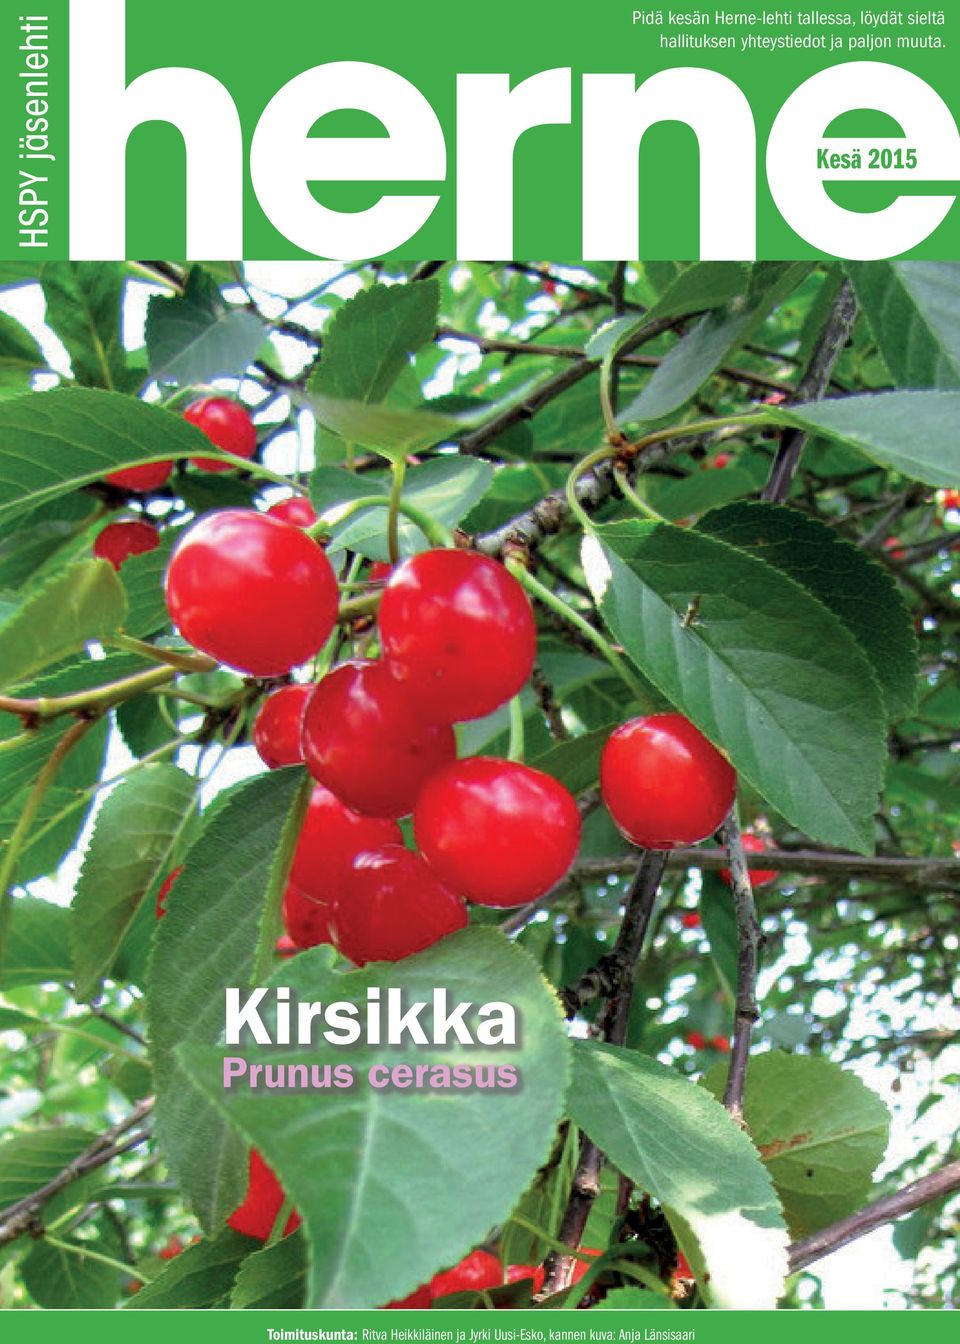 Kesä 2015 Kirsikka Prunus cerasus Toimituskunta: Ritva